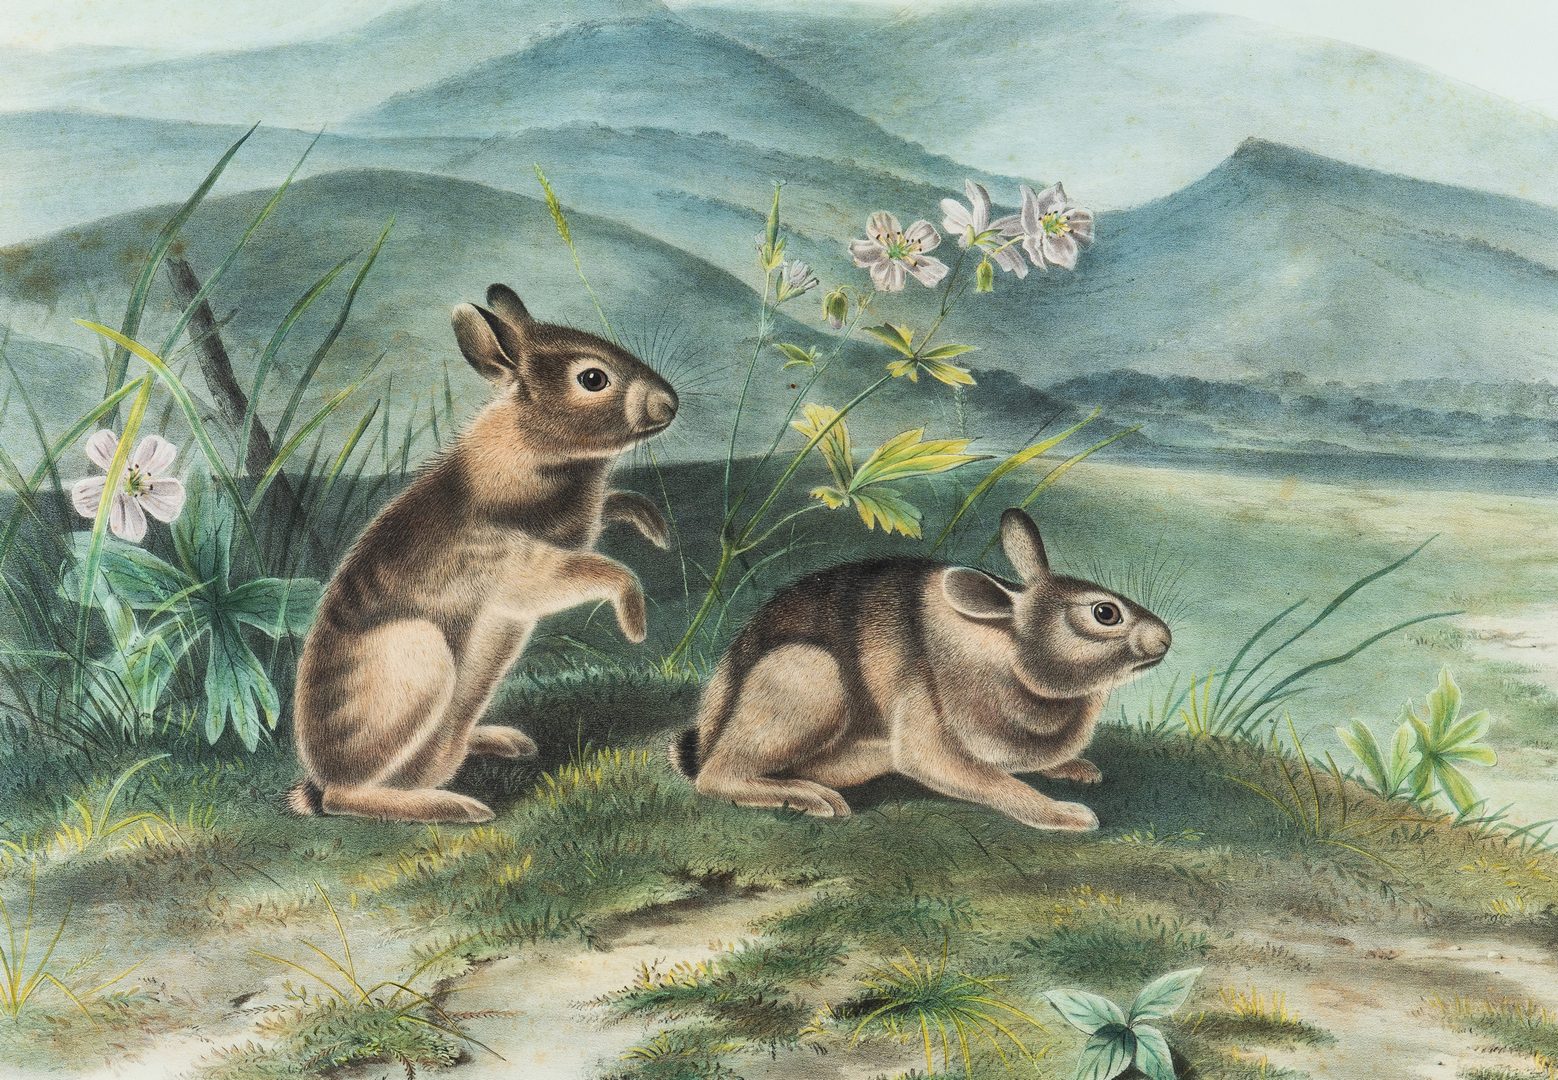 Lot 360: Audubon Nuttal's Hare, Bowen edition.